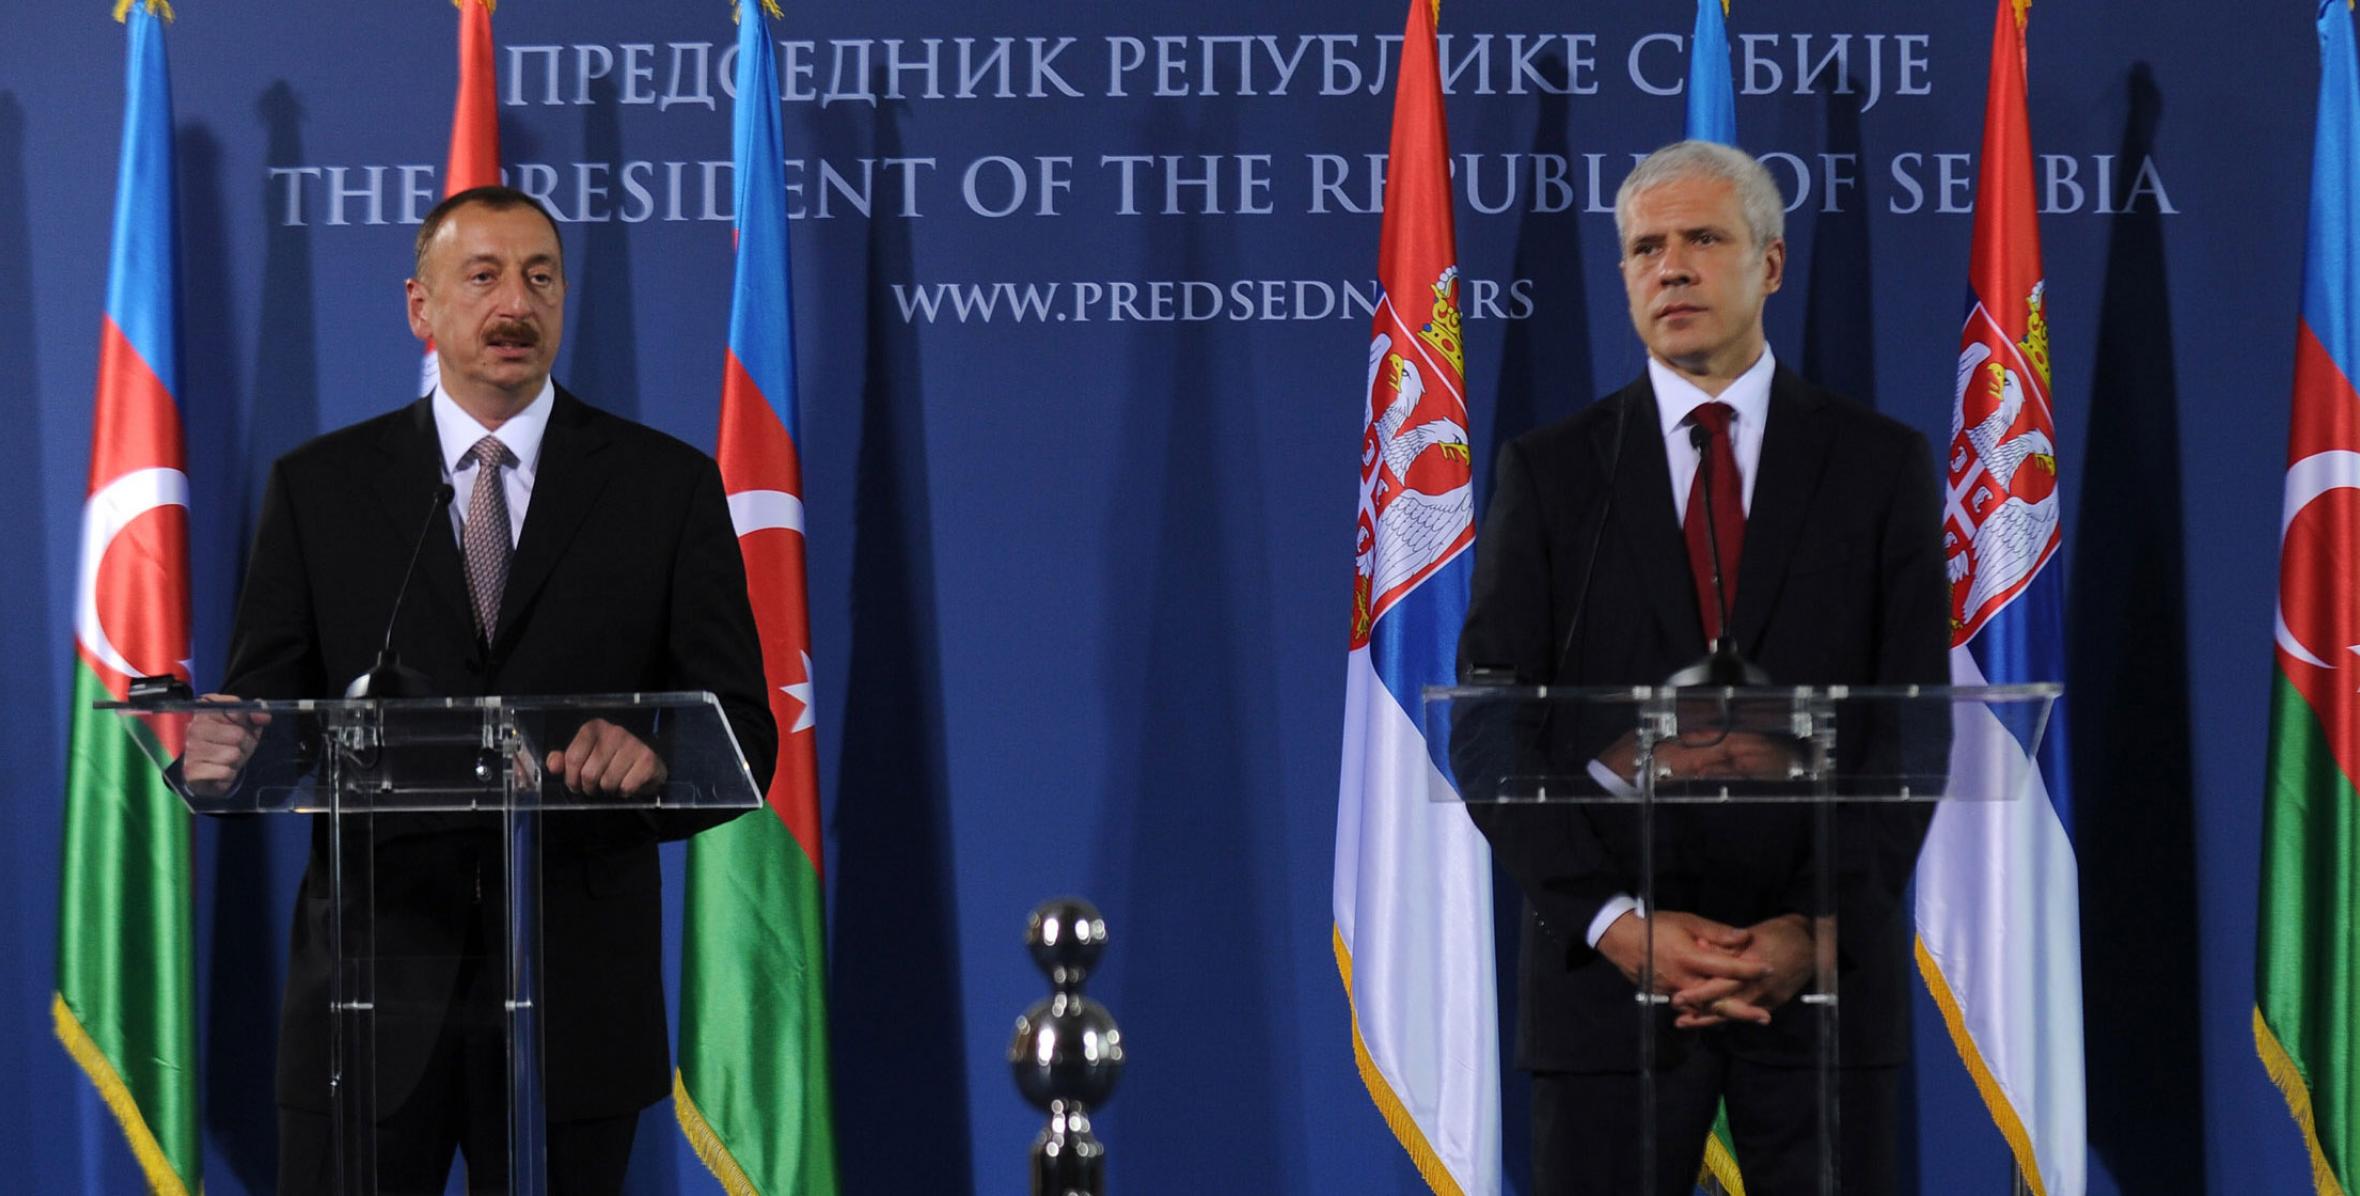 Президенты Азербайджана и Сербии выступили с заявлениями для печати